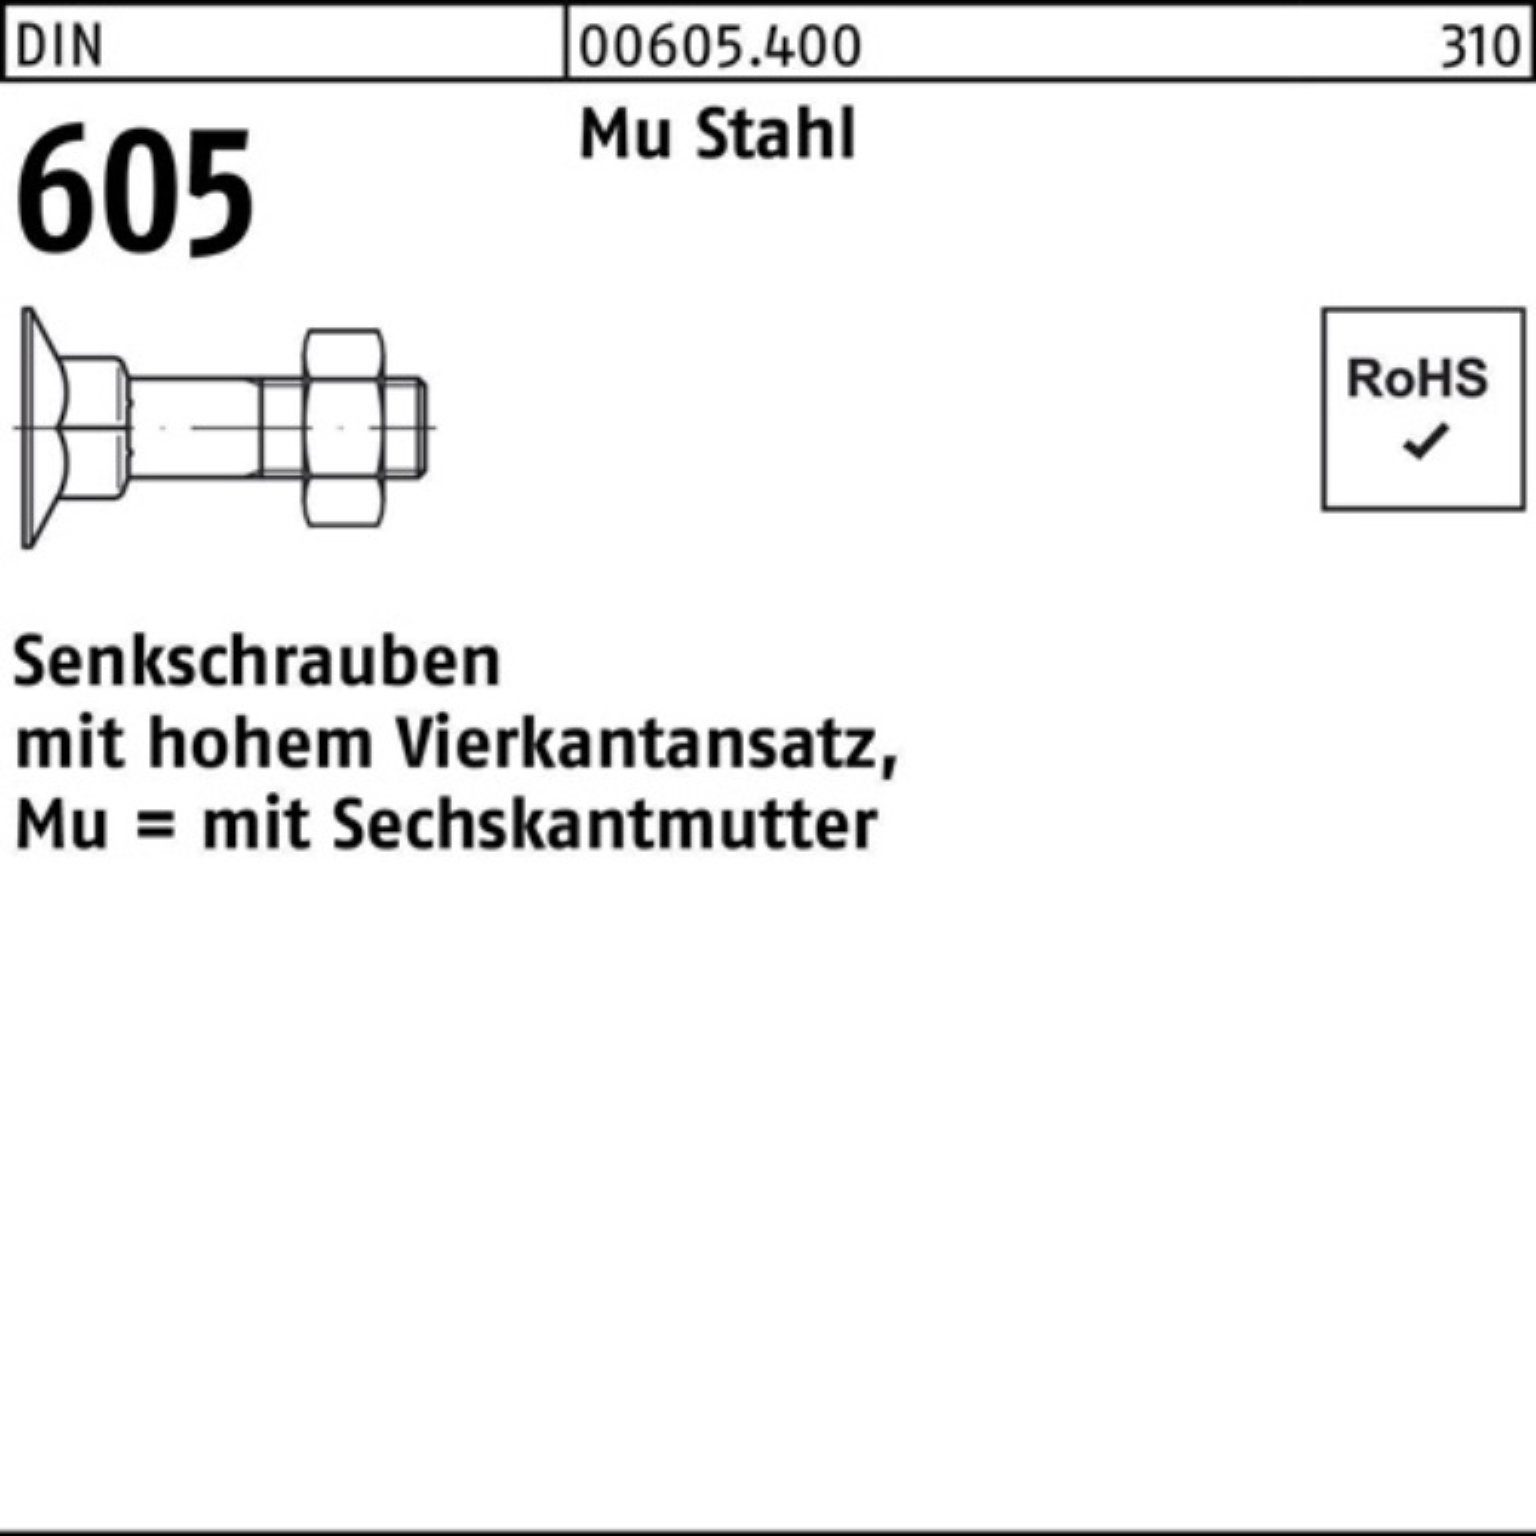 Stahl Senkschraube Pack Mu M6x Reyher 45 4-ktansatz/6-ktmutter Senkschraube 605 DIN 200er